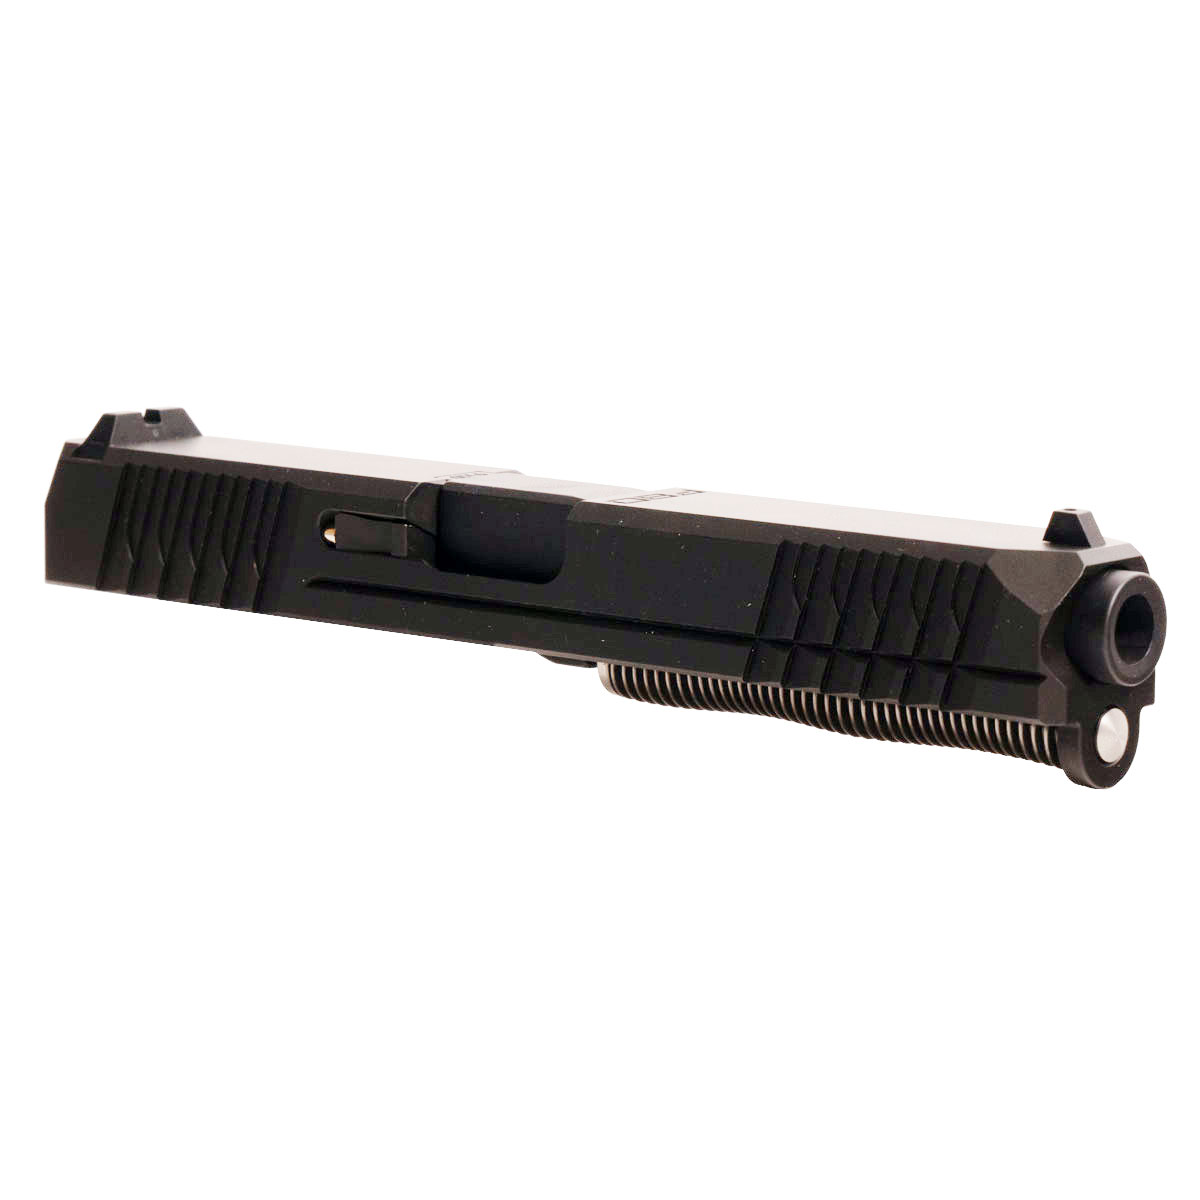 DTT 'Eidolon Ally' 9mm Complete Slide Kit - Glock 17 Gen 1-3 Compatible